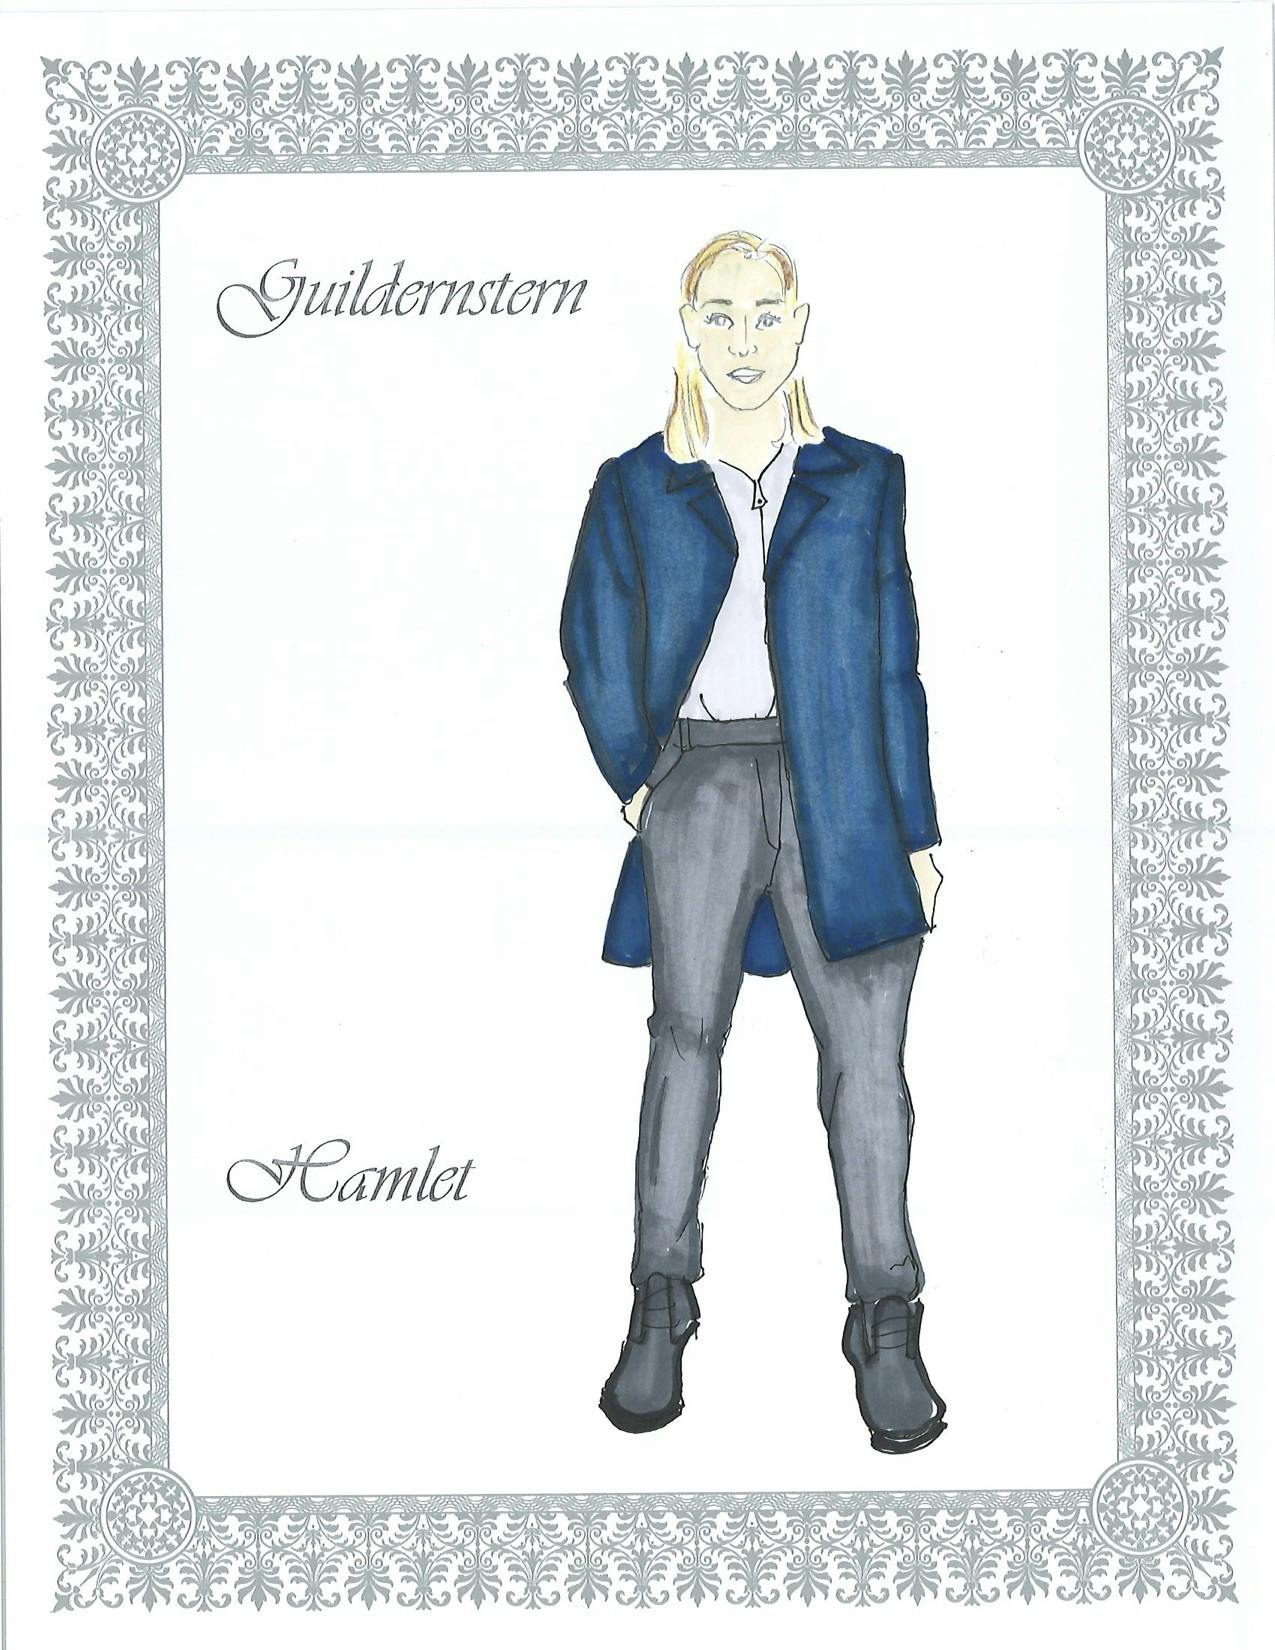 Guildernstern costume design